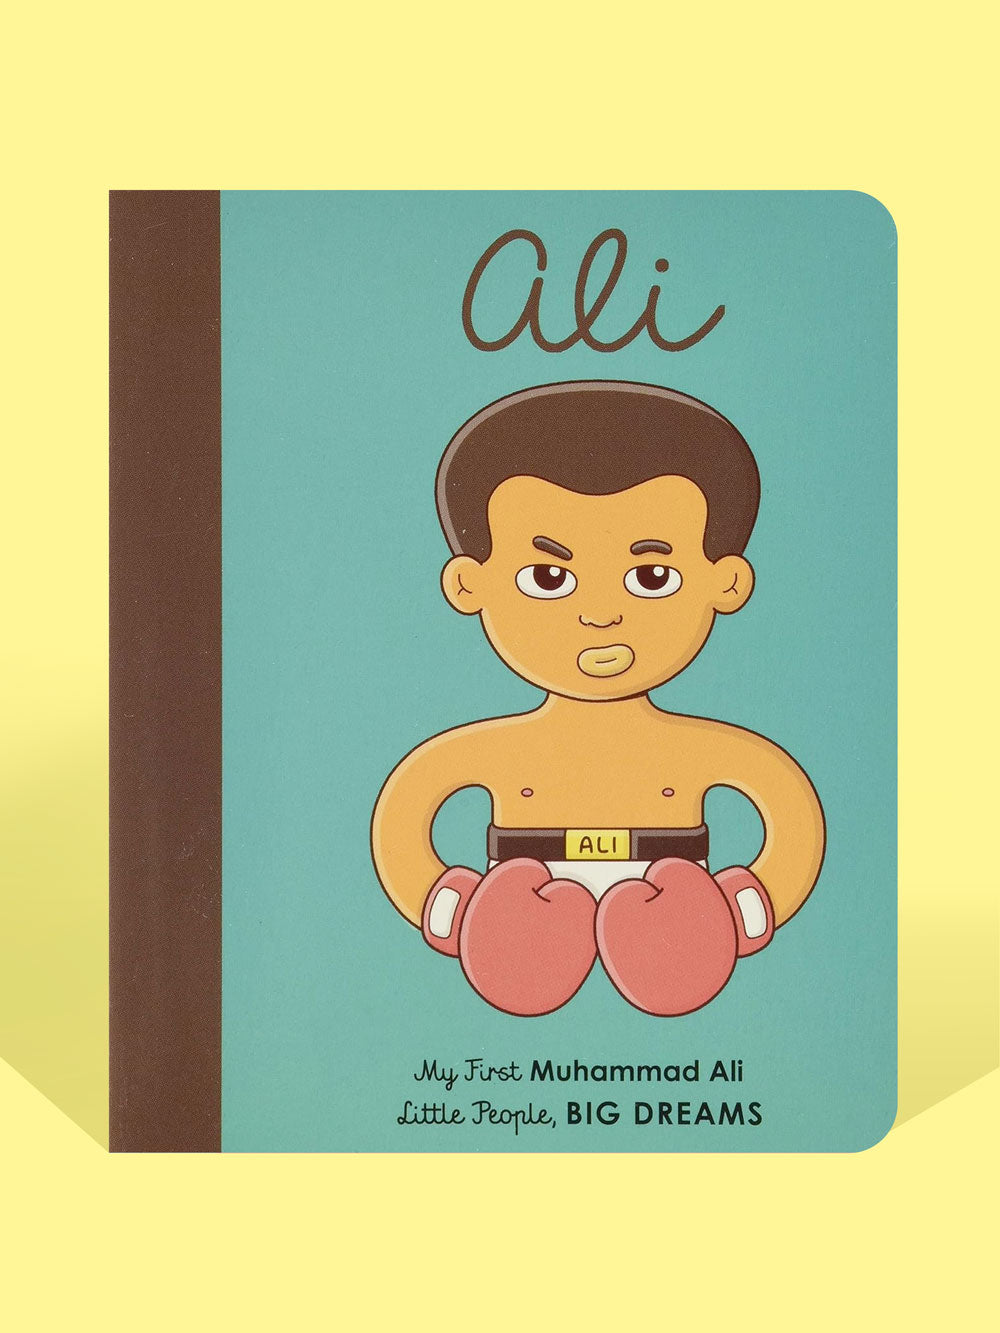 Muhammad Ali (Little People, Big Dreams)